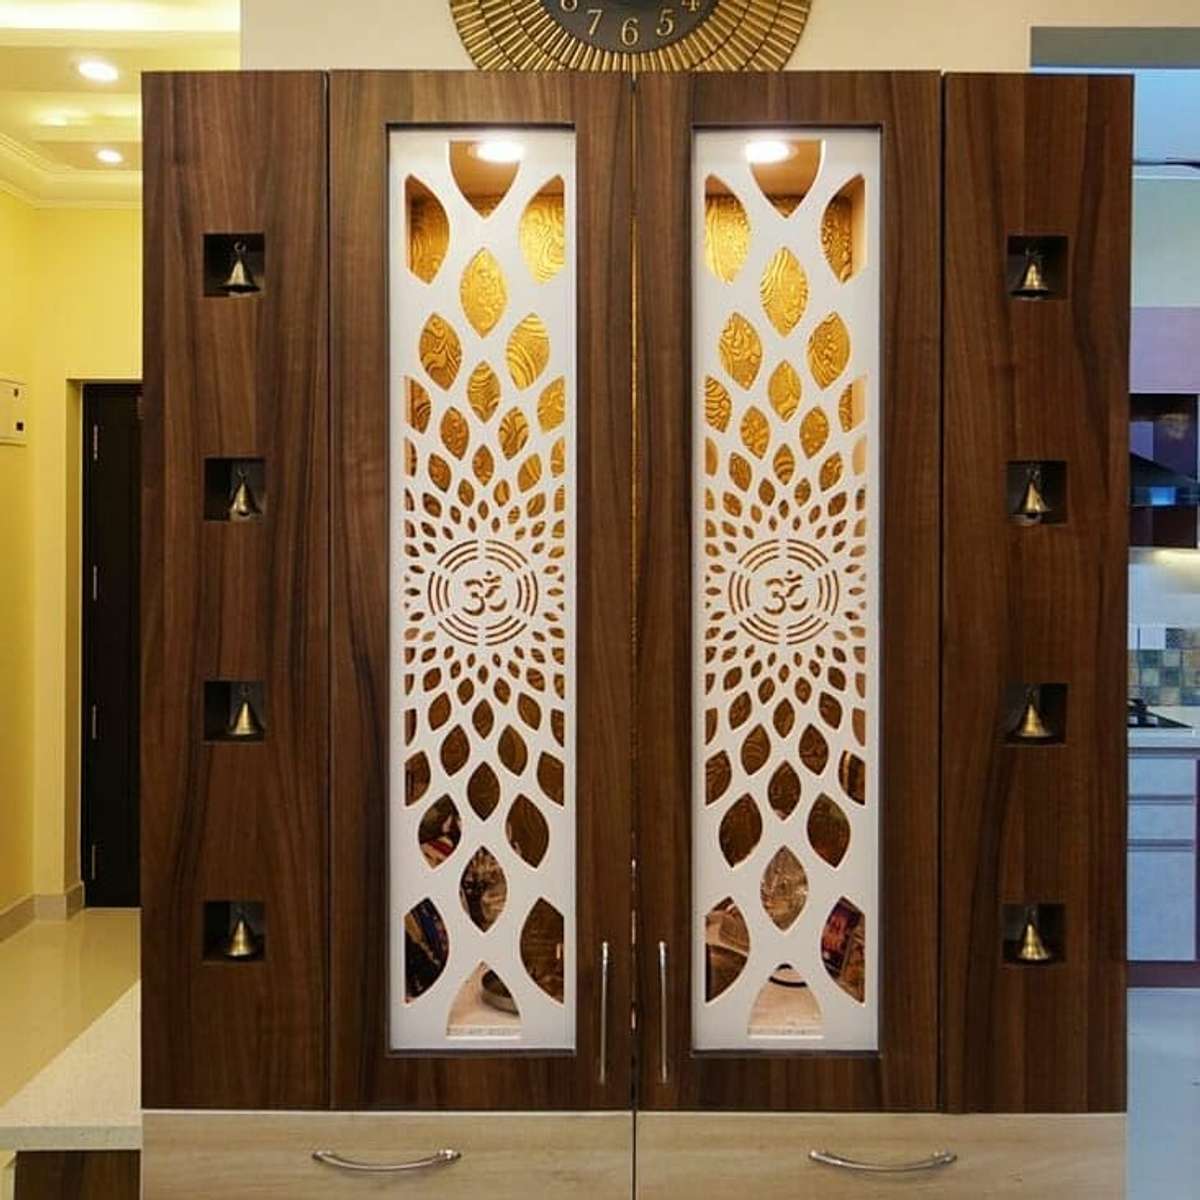 Designs by Building Supplies Nirmal Diwach, Jaipur | Kolo